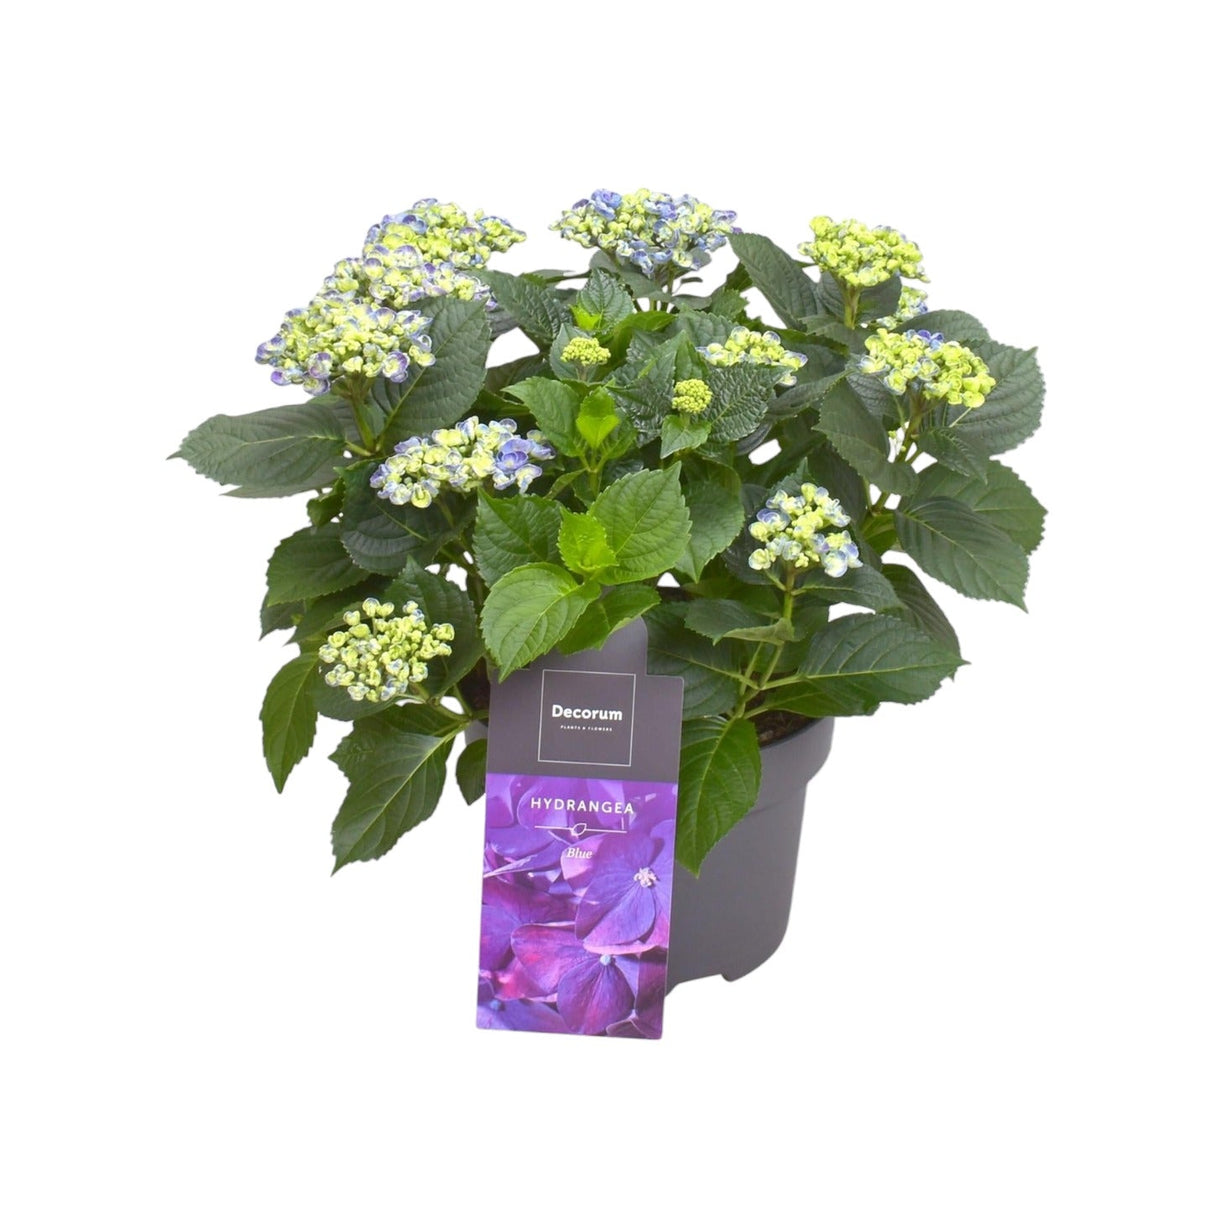 Livraison plante Hortensia curly parme 9 - 15 têtes - plante fleurie d'extérieur